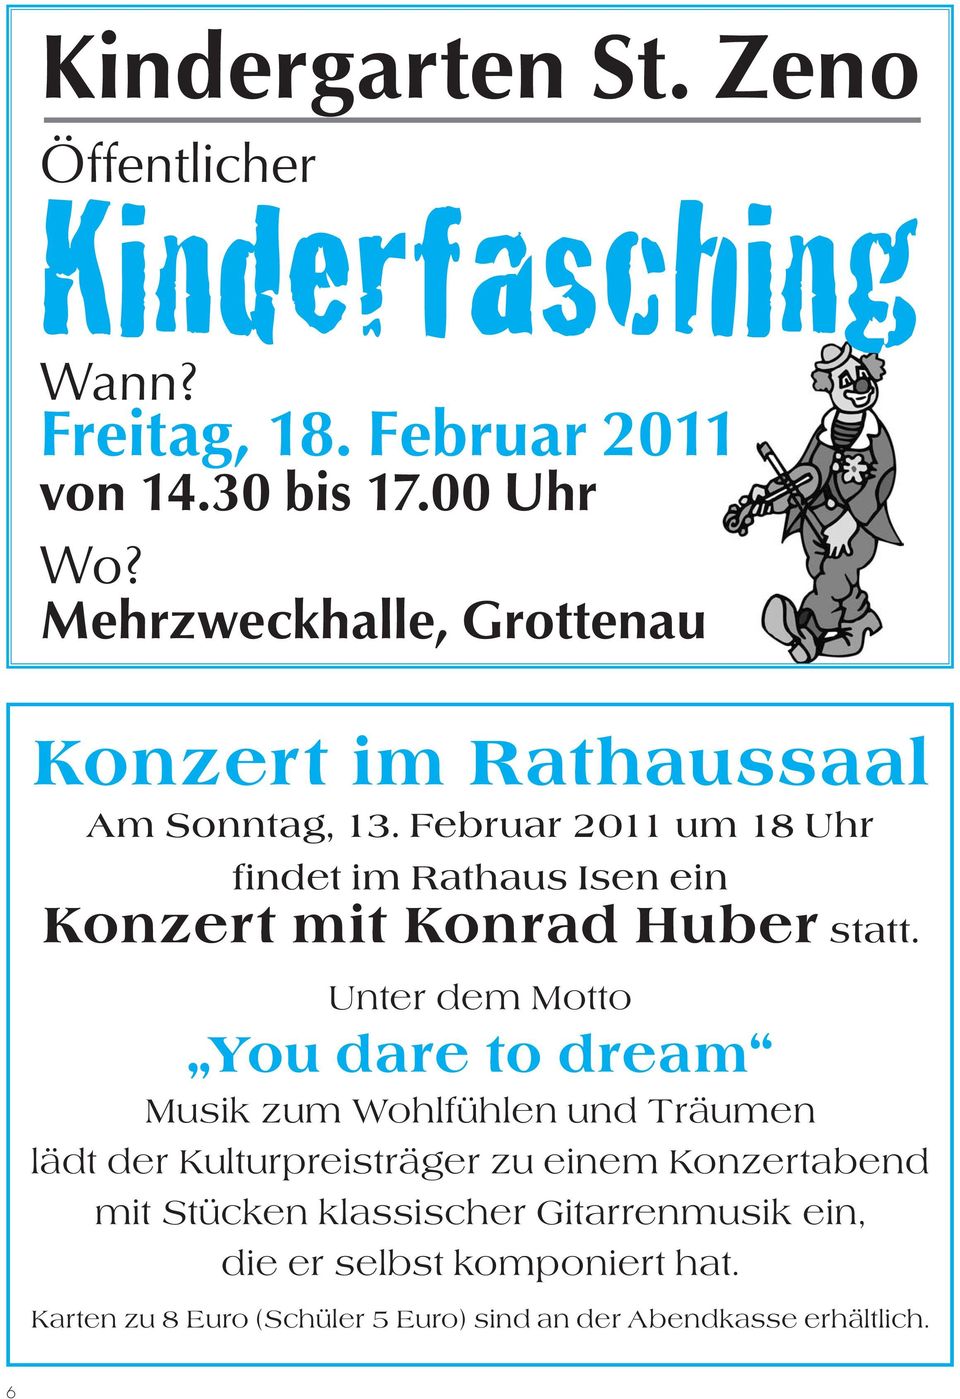 Februar 2011 um 18 Uhr findet im Rathaus Isen ein Konzert mit Konrad Huber statt.